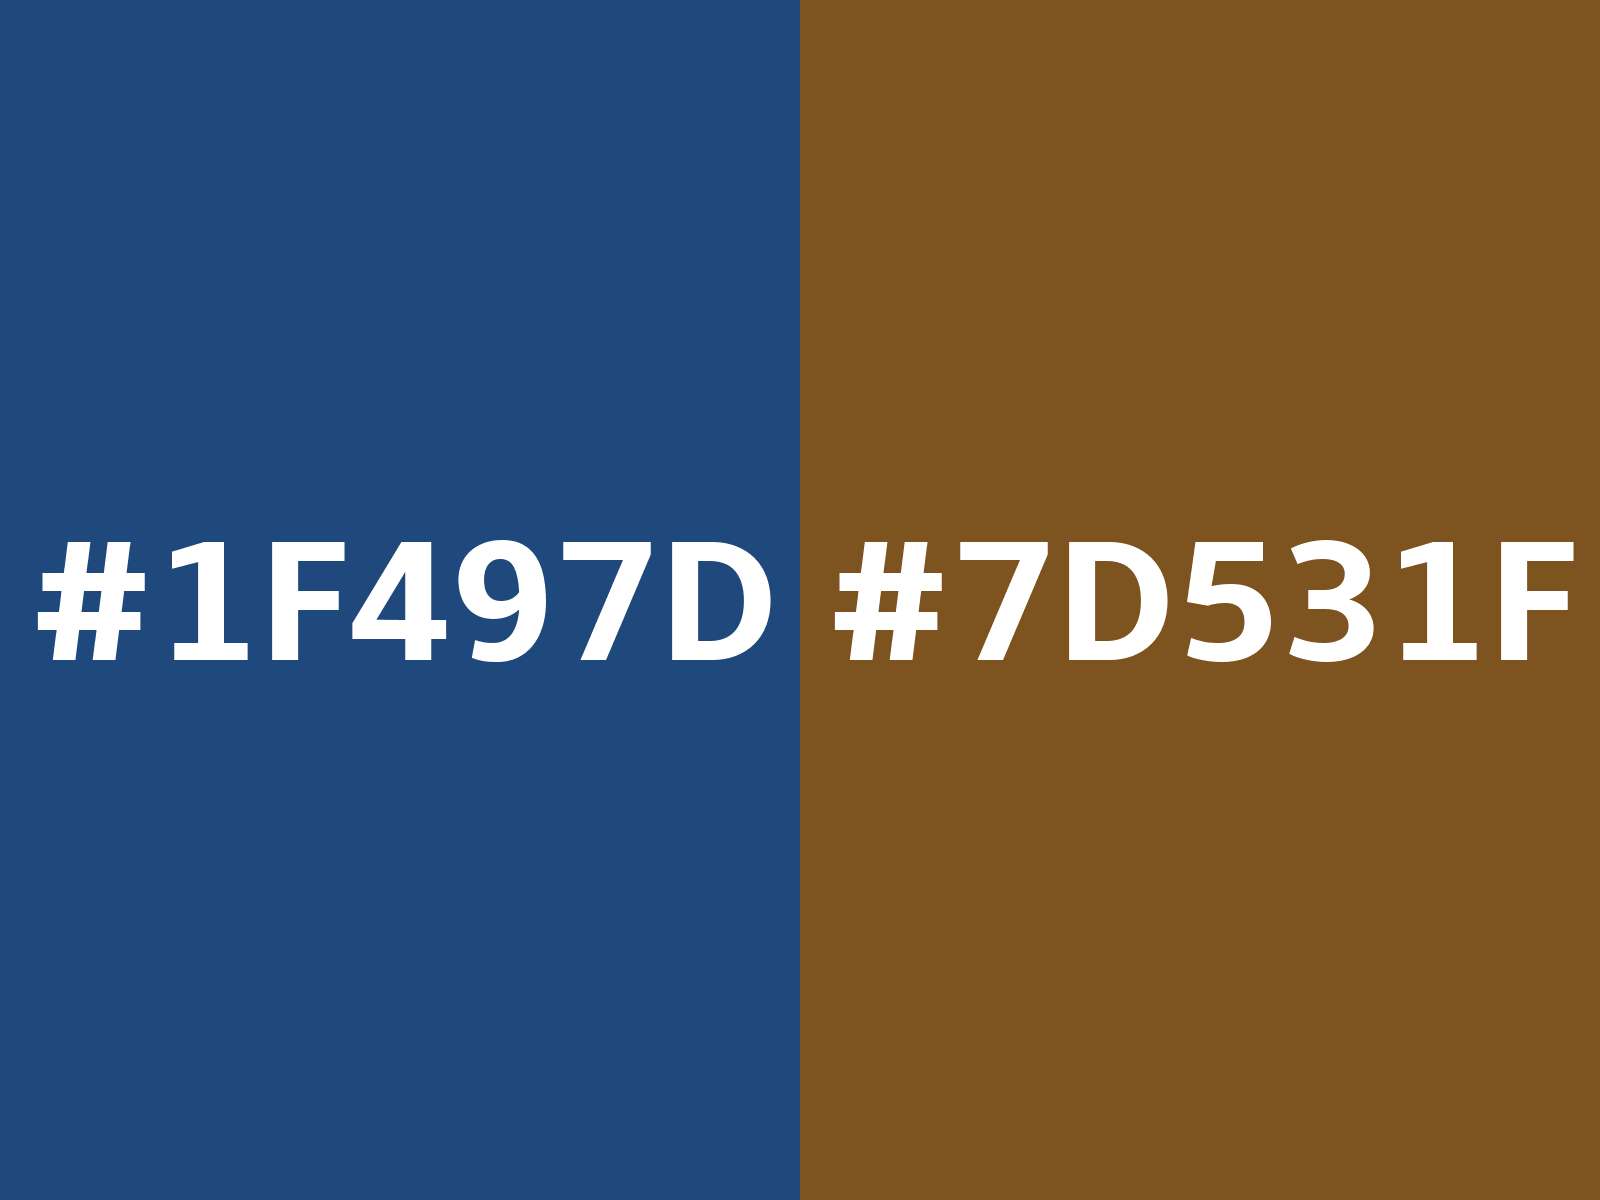 1F3D0C Hex Color, RGB: 31, 61, 12